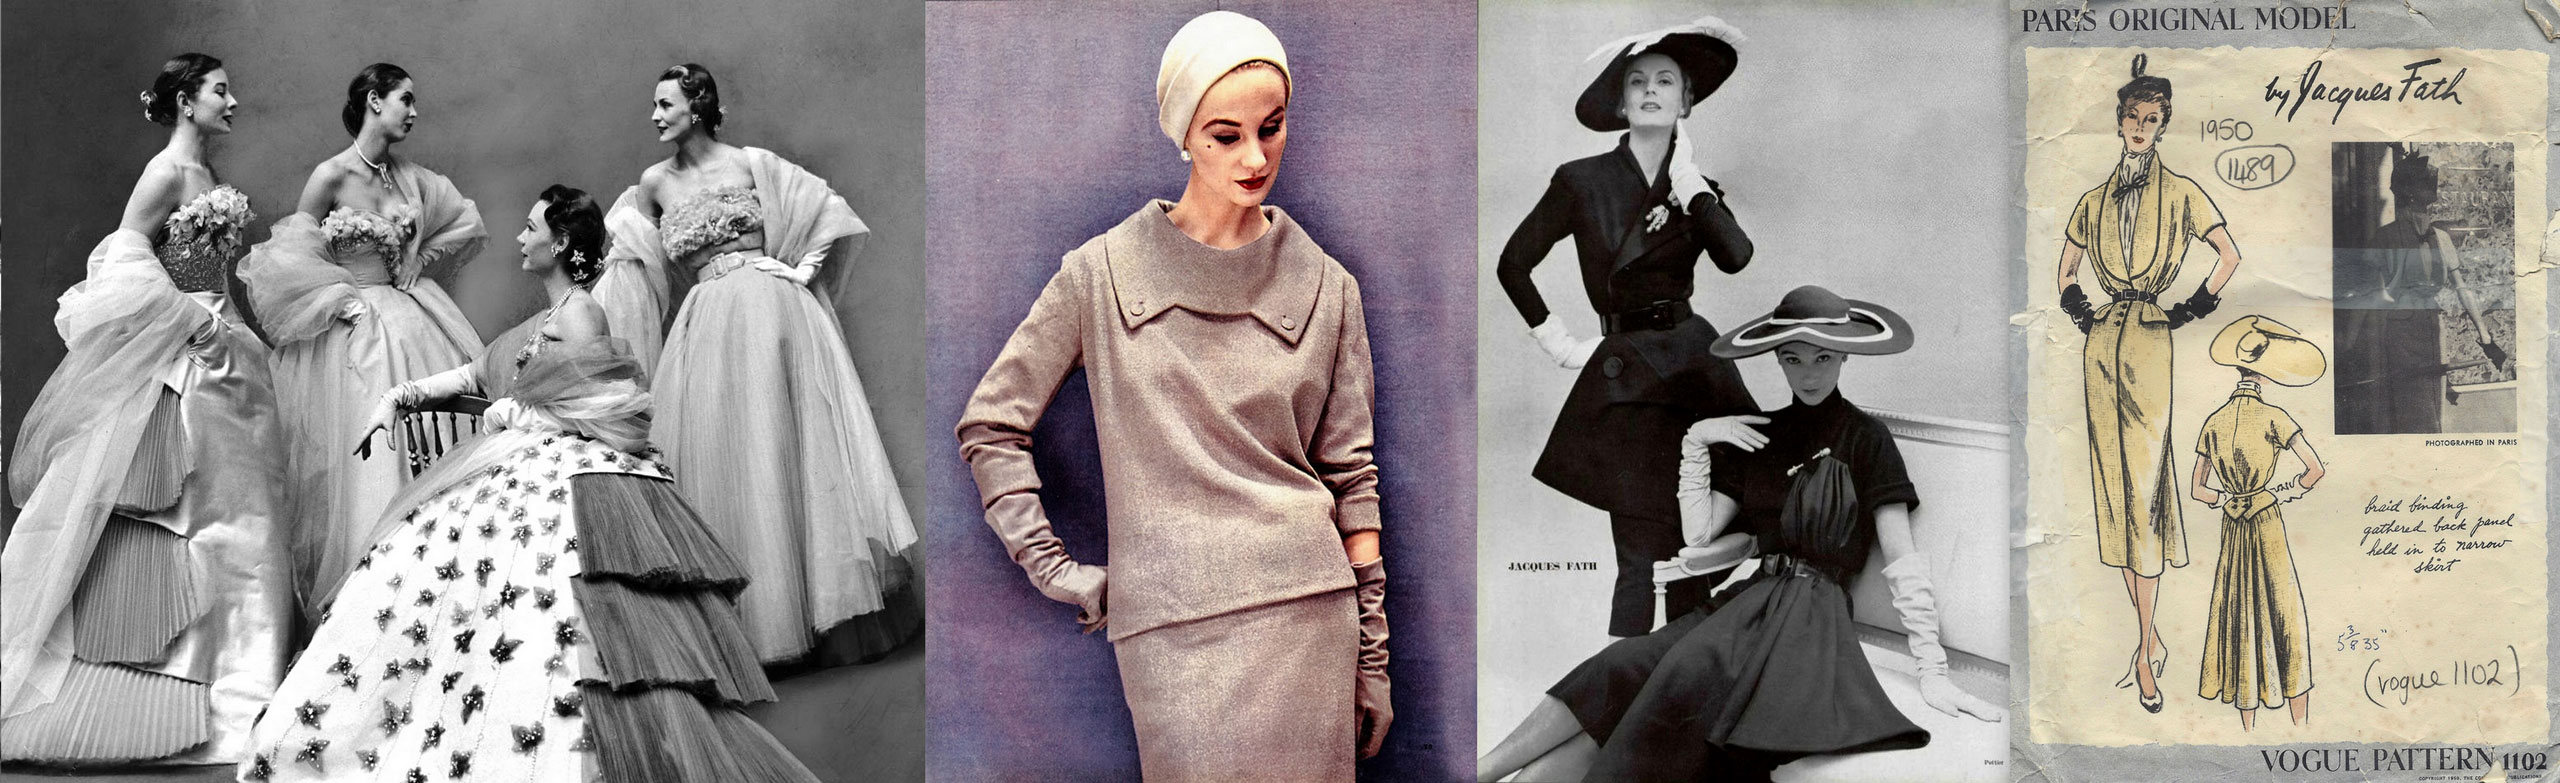 Créations de Jacques Fath, entre glamour et new look, du milieu des années 40 au milieu des années 50.<br><br>